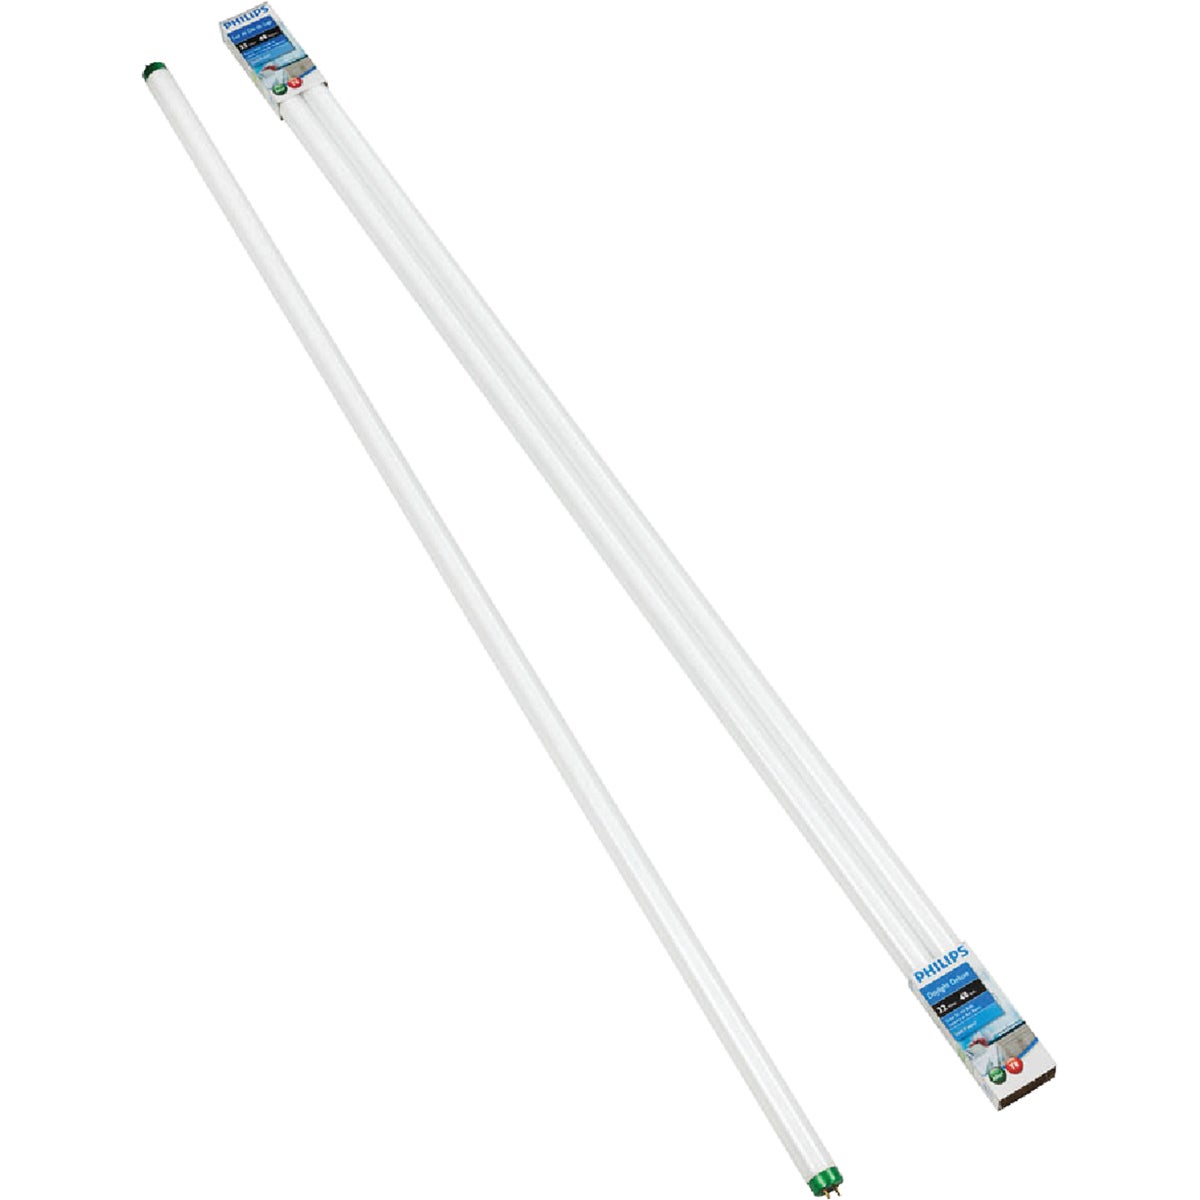 Philips ALTO 32W 48 In. Daylight Deluxe T8 Medium Bi-Pin Fluorescent Tube Light Bulb (2-Pack)